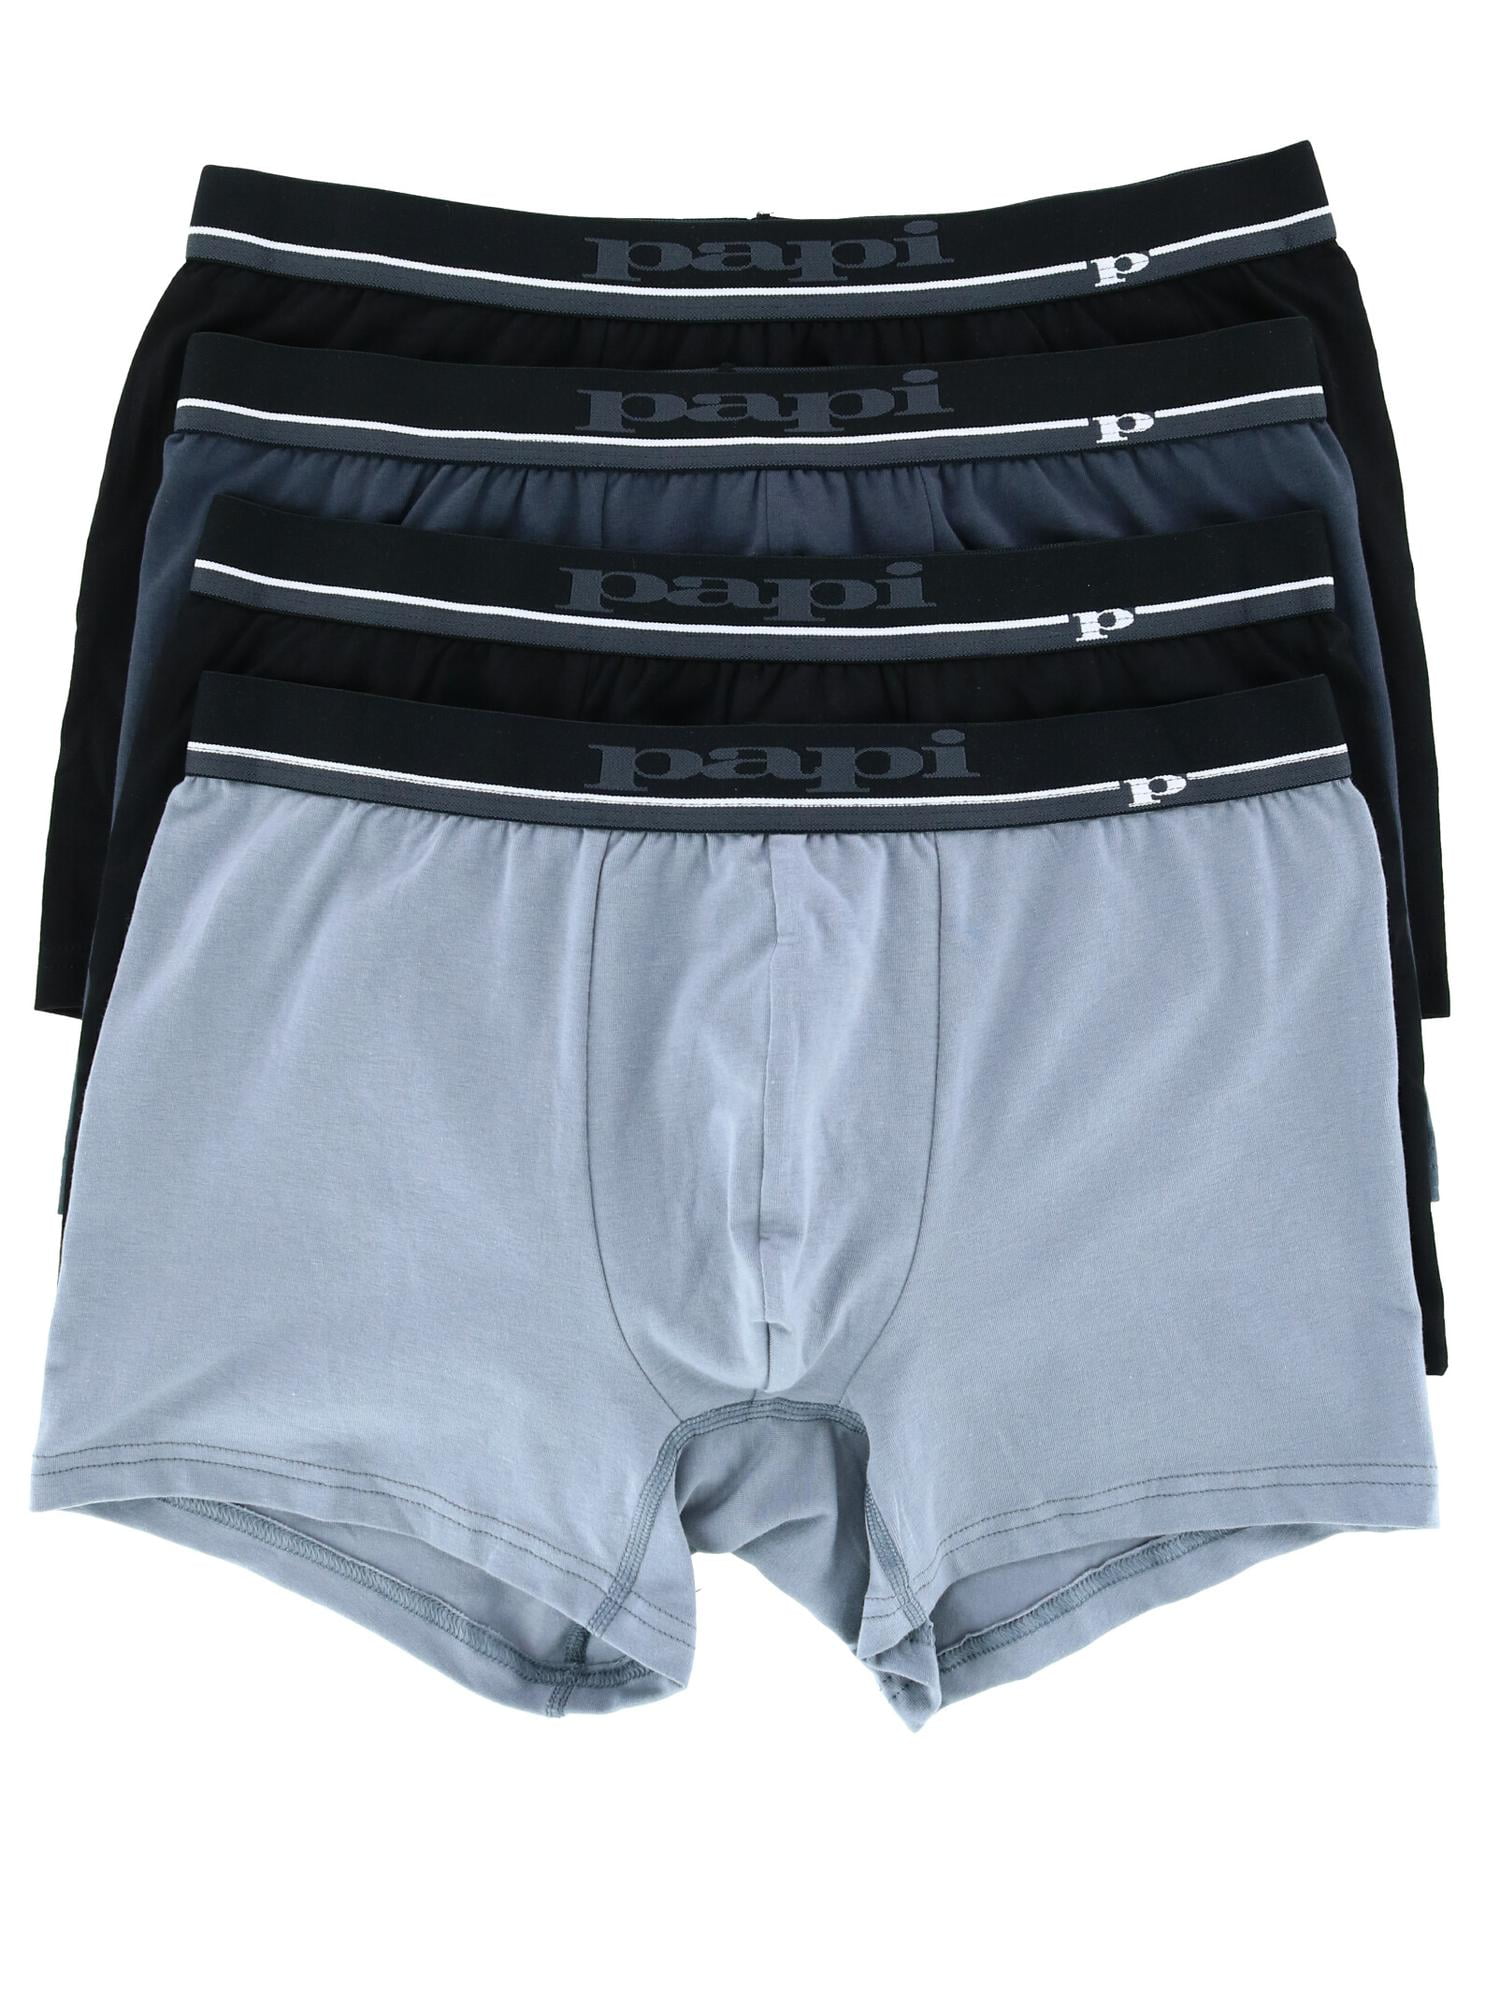 Papi Solid Comfort Underwear Trunks (Pack of 4) (Men's) - Walmart.com